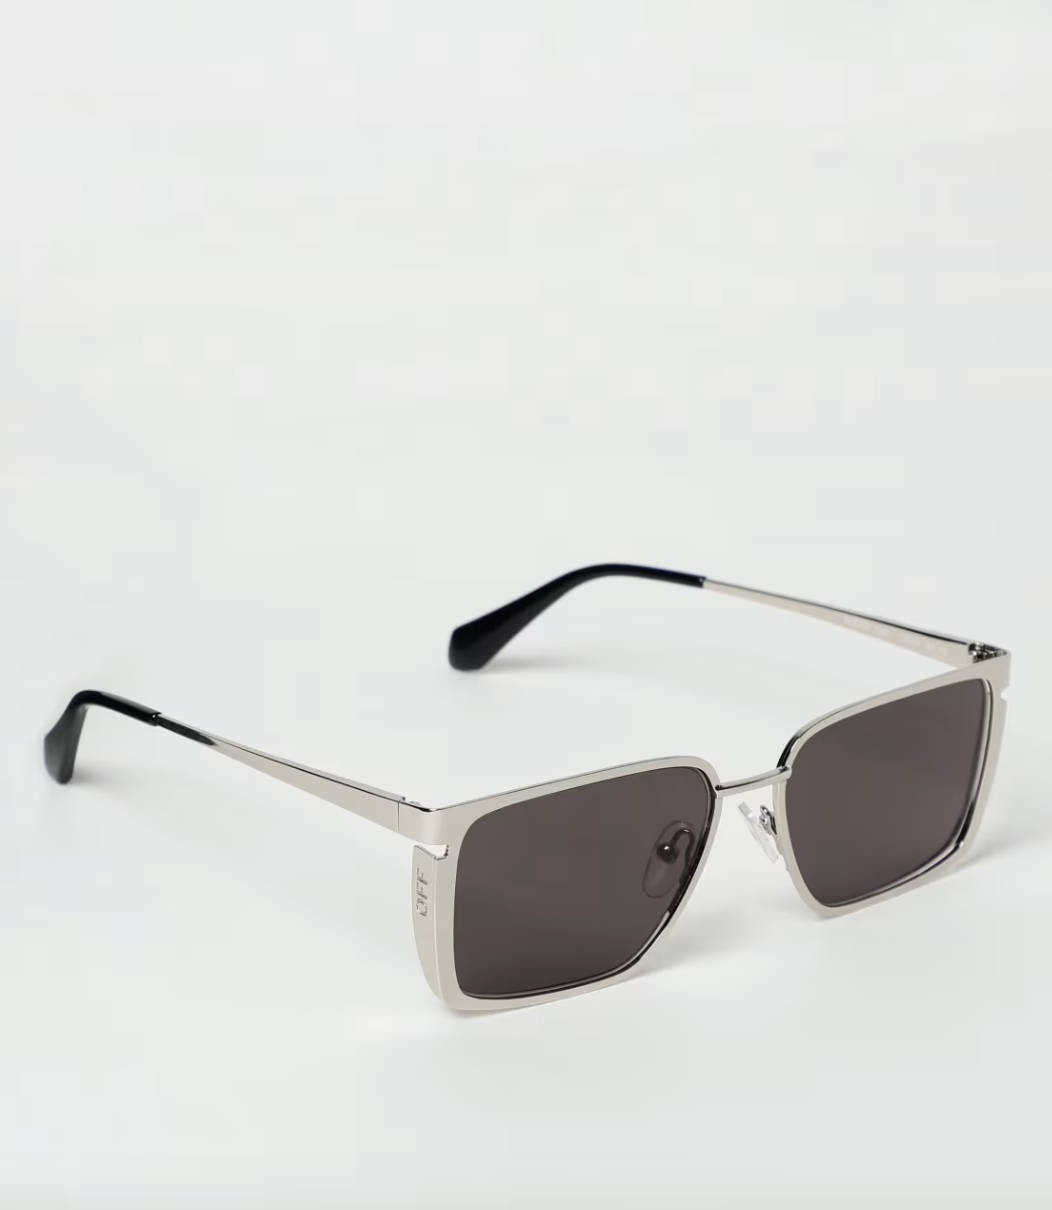 Off-White OERI121S24MET0017207 56mm New Sunglasses